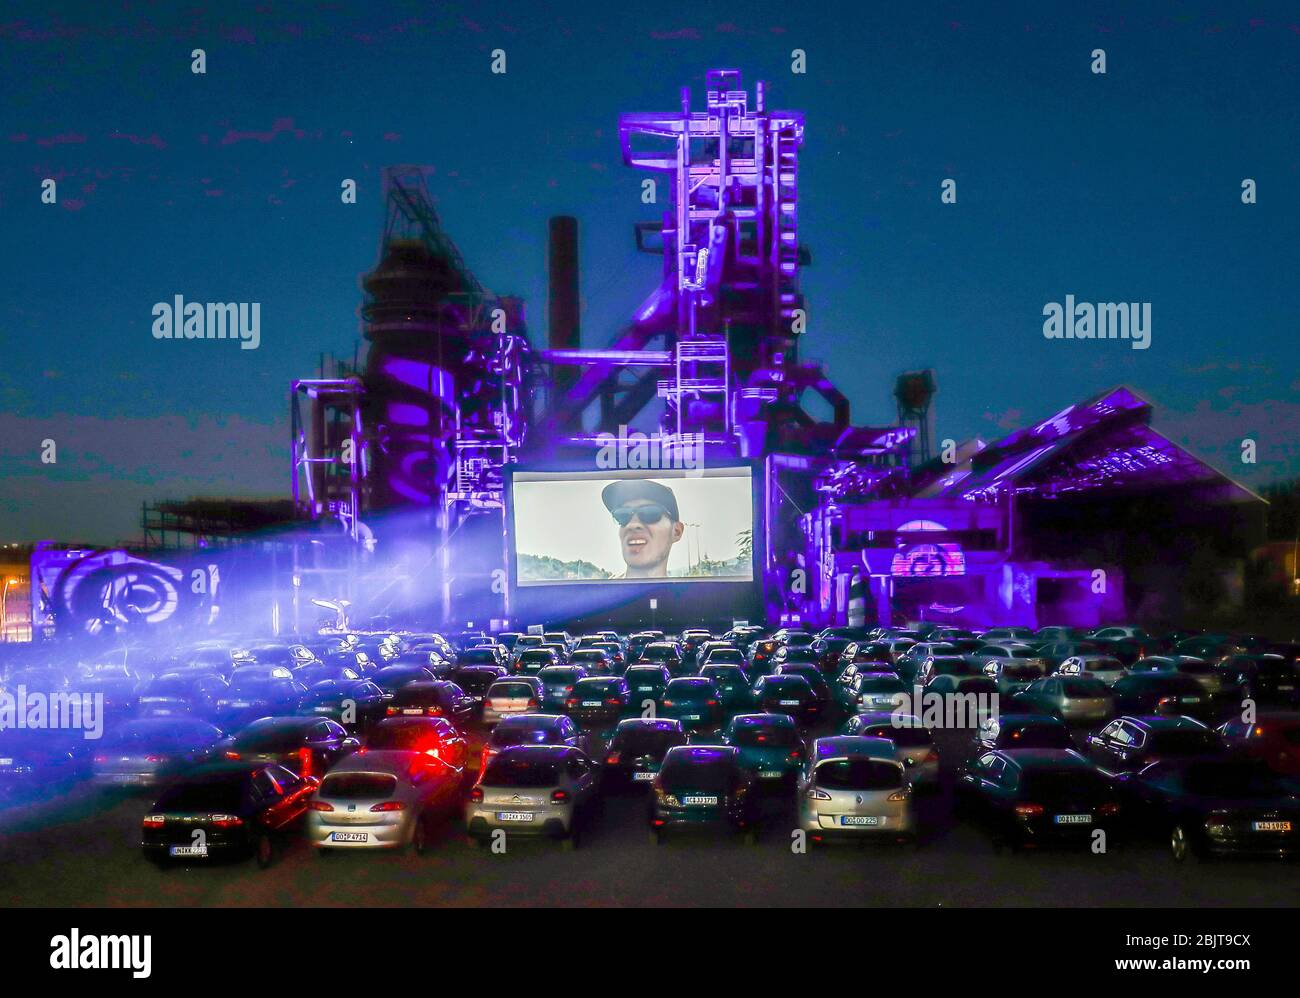 20.04.2020, Dortmund, région de la Ruhr, Rhénanie-du-Nord-Westphalie, Allemagne - cinéma en voiture Dortmund, nouveau cinéma en voiture devant l'ancien souffle Banque D'Images